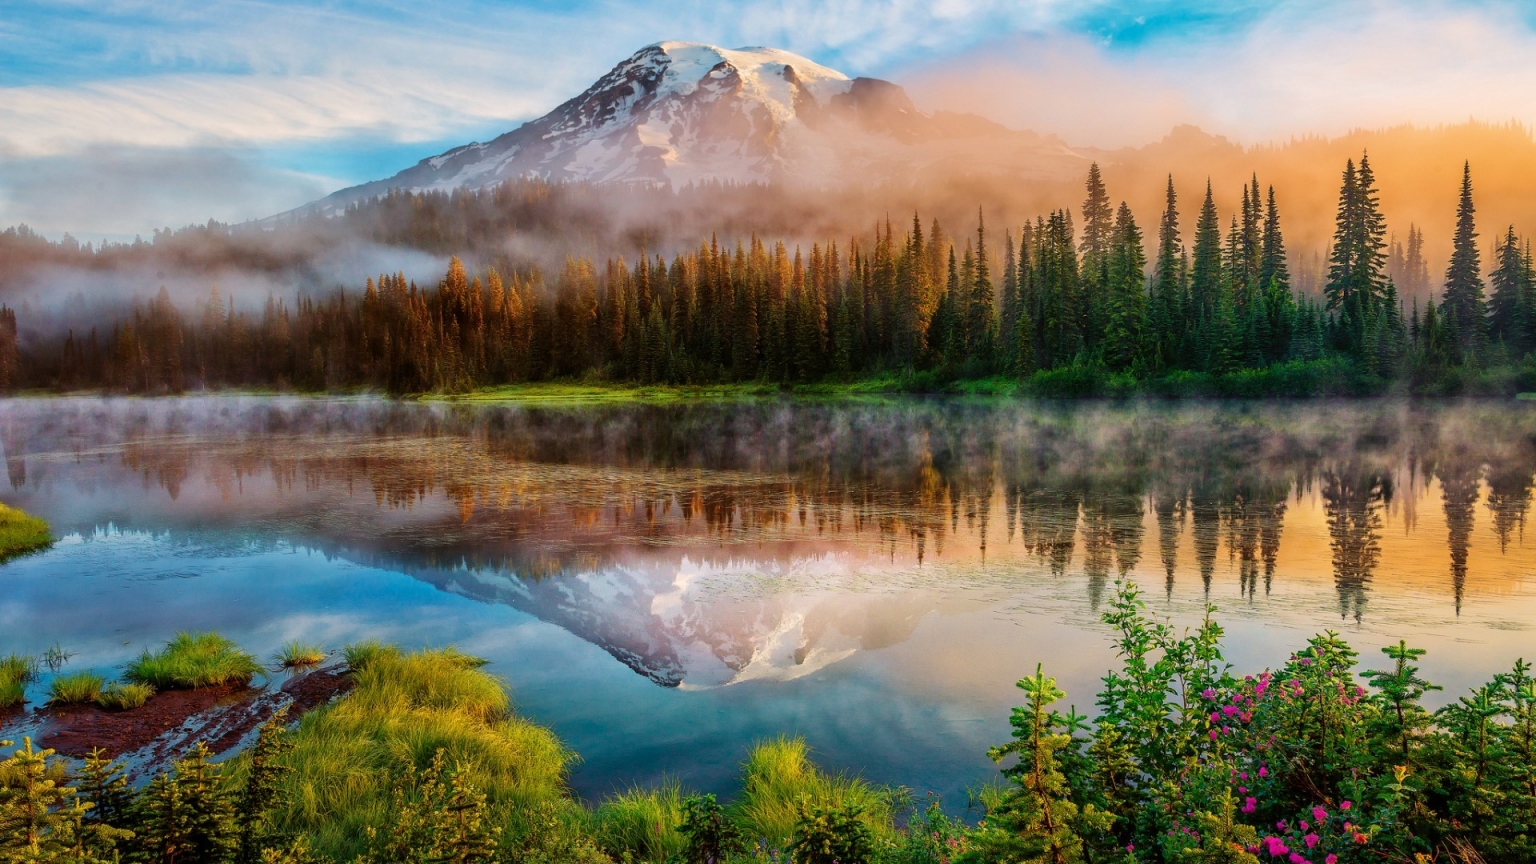 Mount Rainier Landscape for 1536 x 864 HDTV resolution